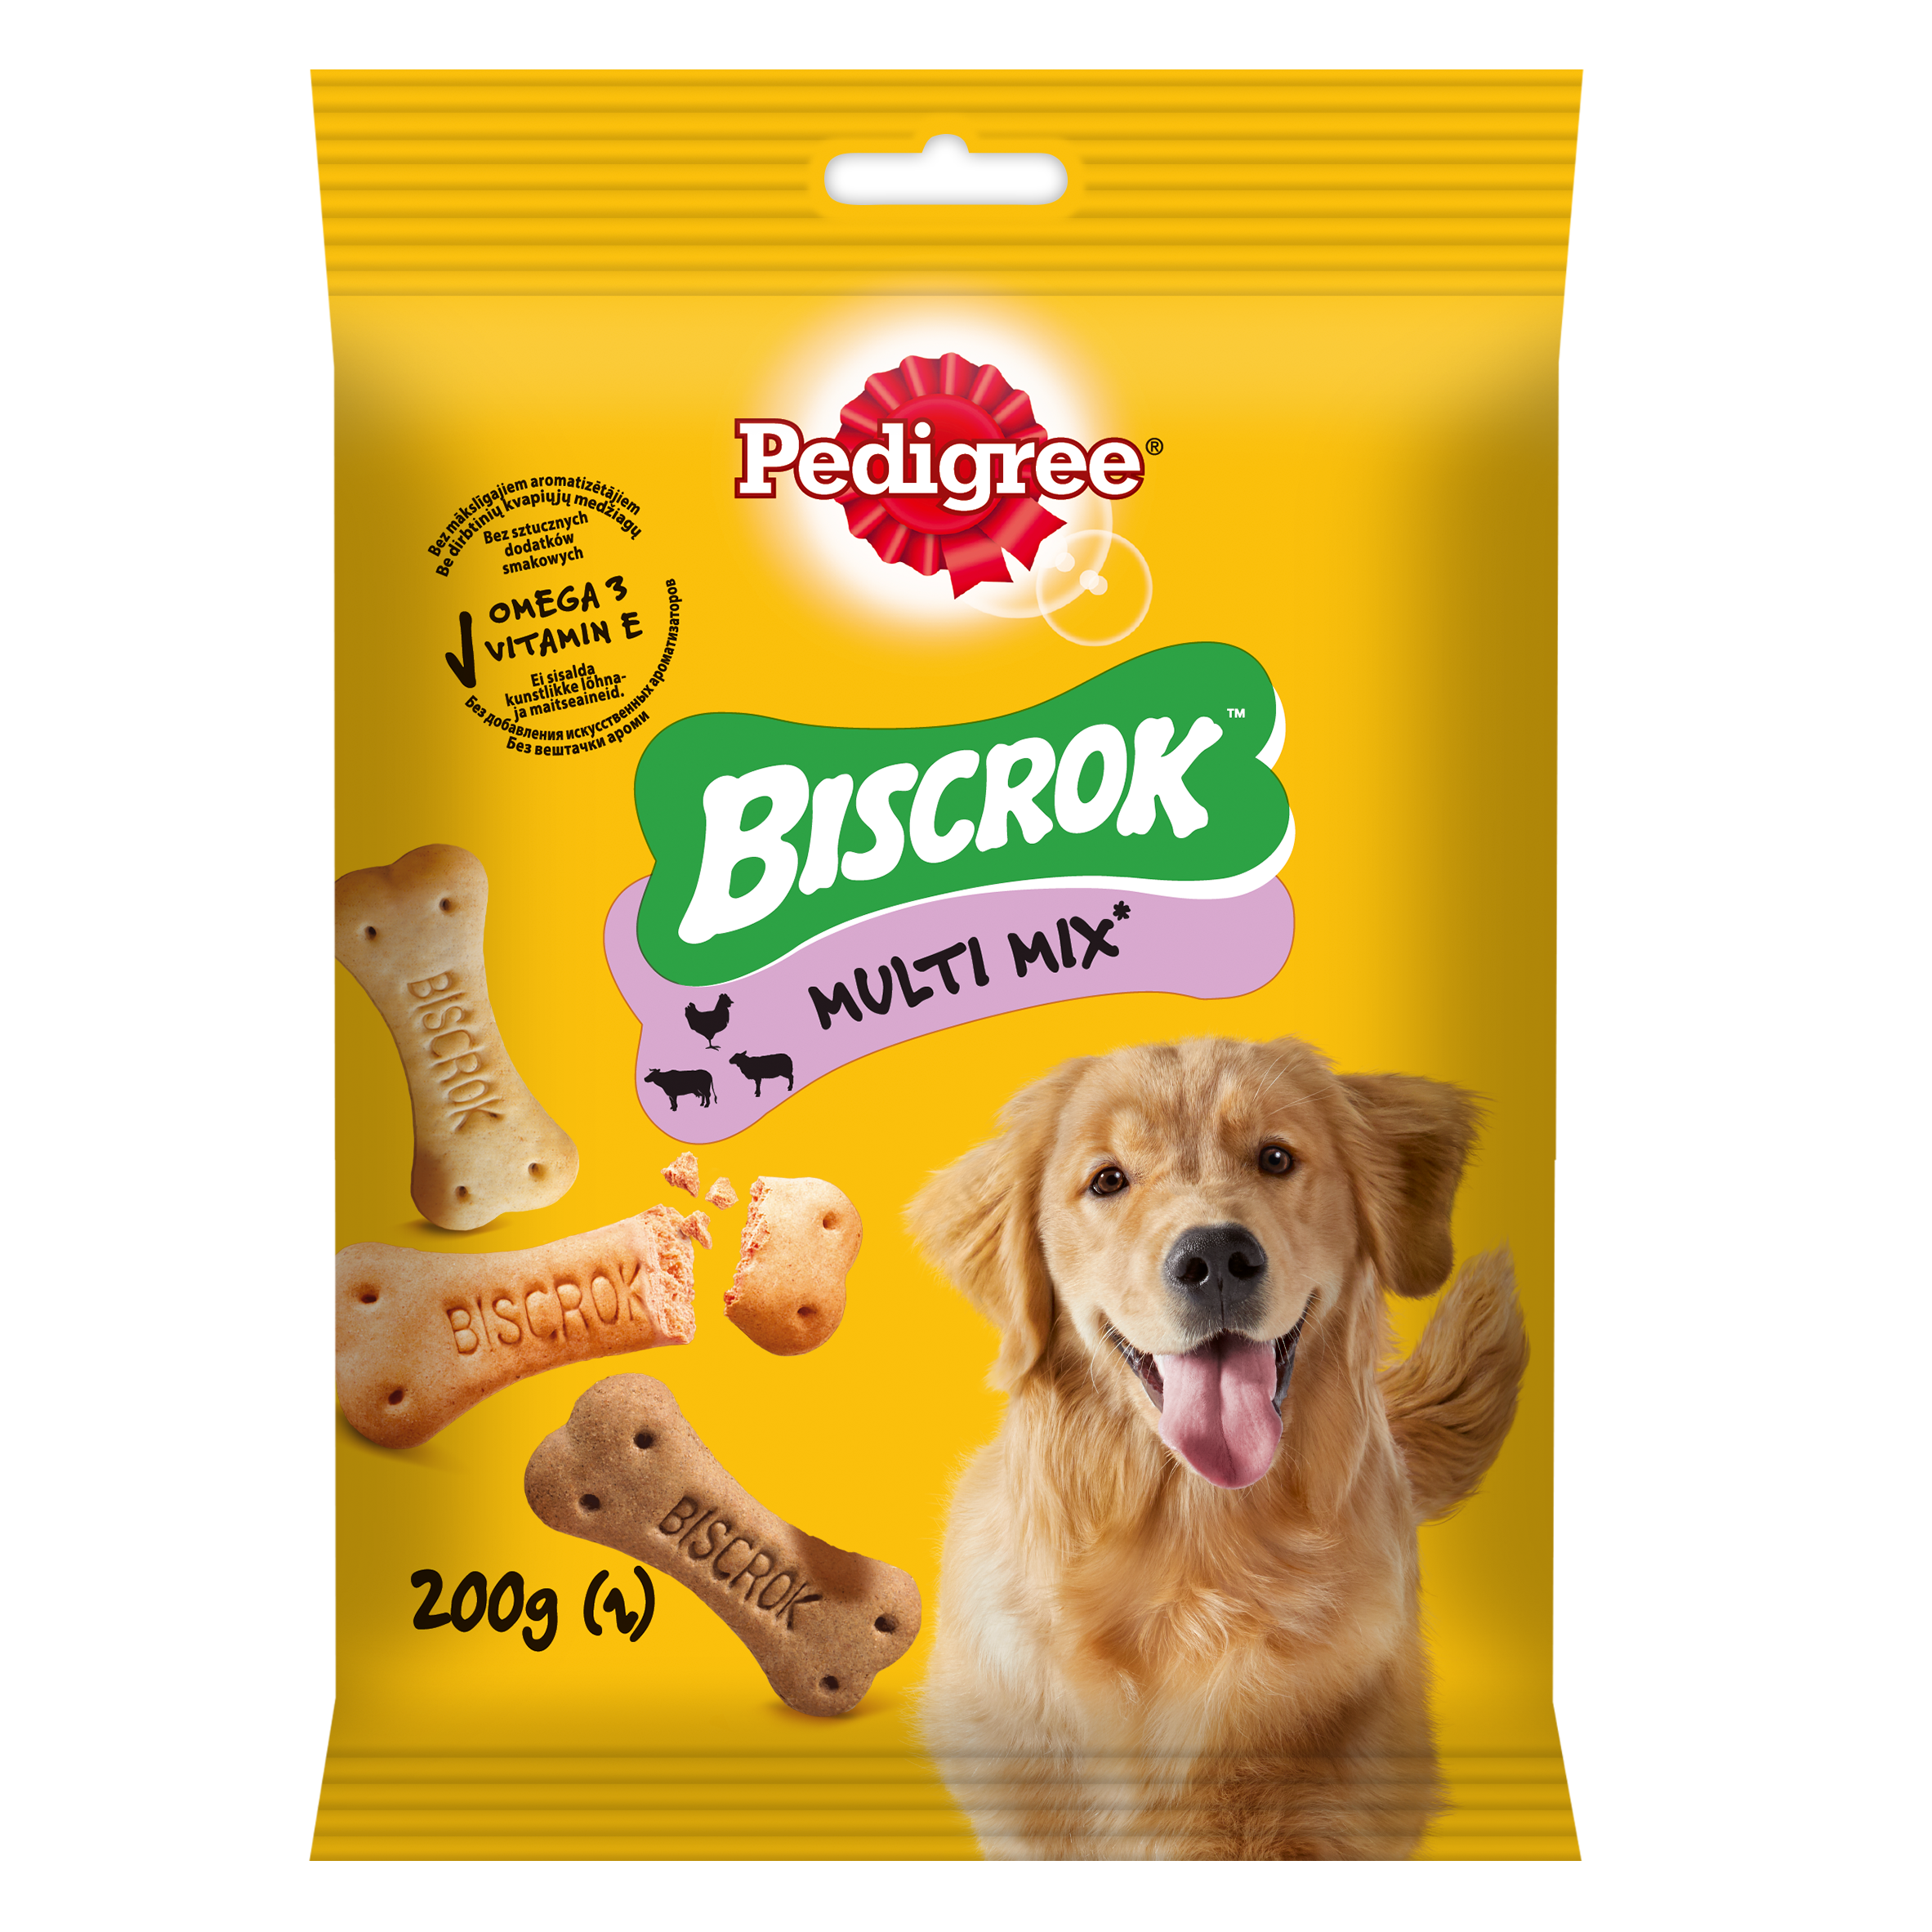 Pedigree Biscrok Multi Mix 200g - Snack per Cani